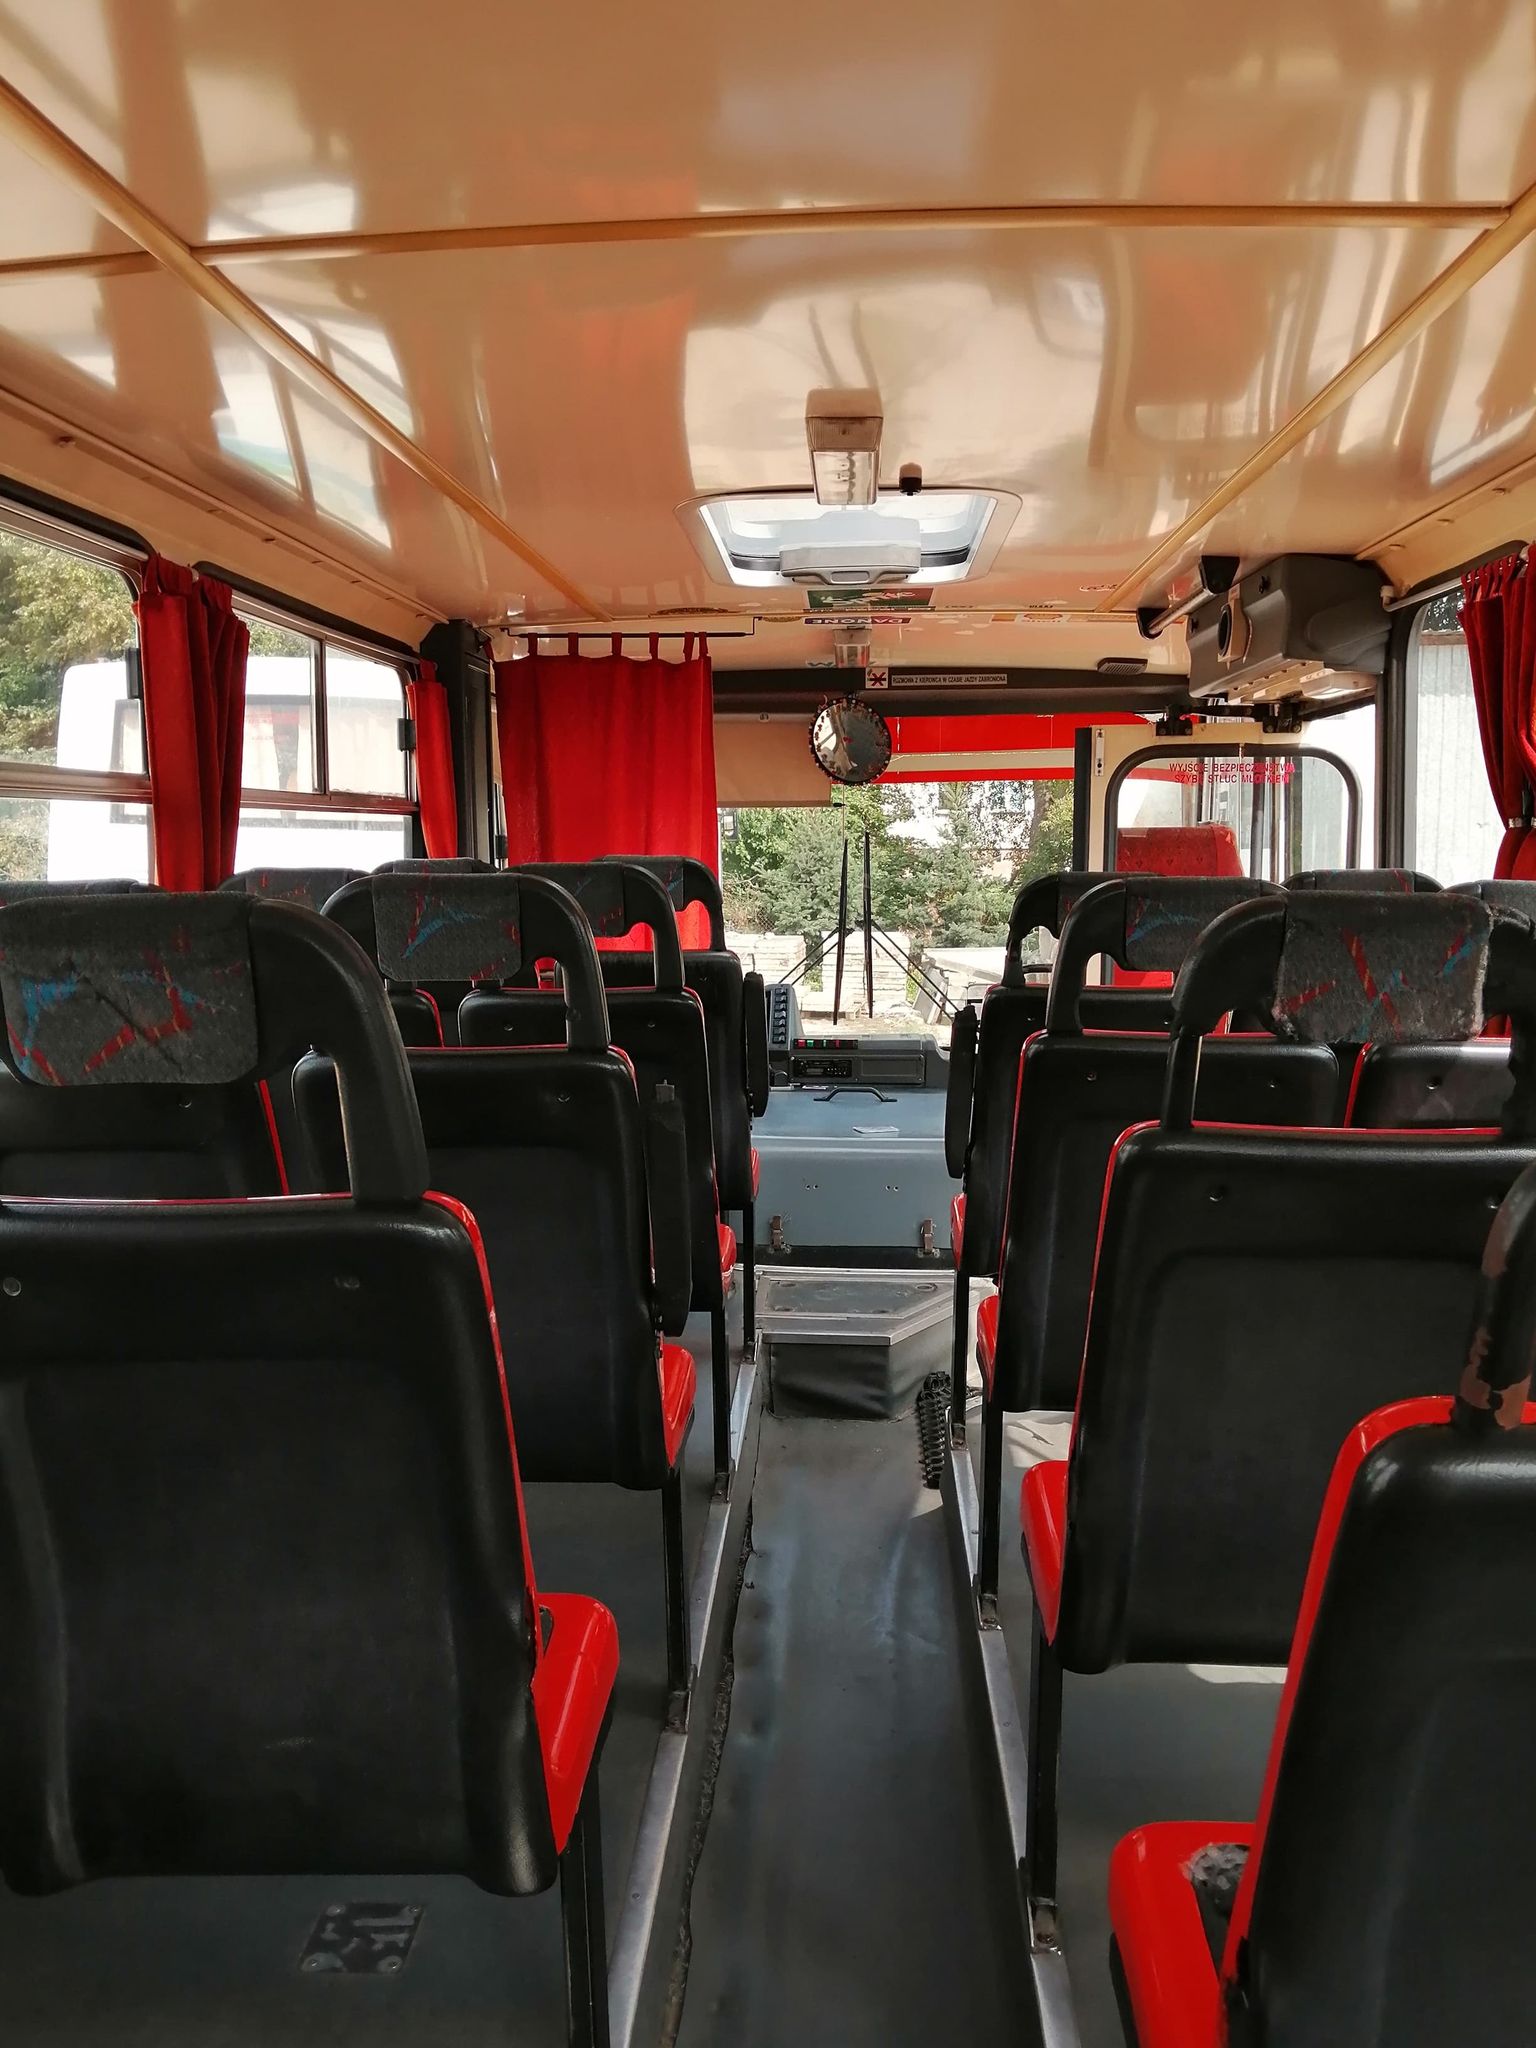 zdjęcie przedstawia widok autobusu od wewnątrz